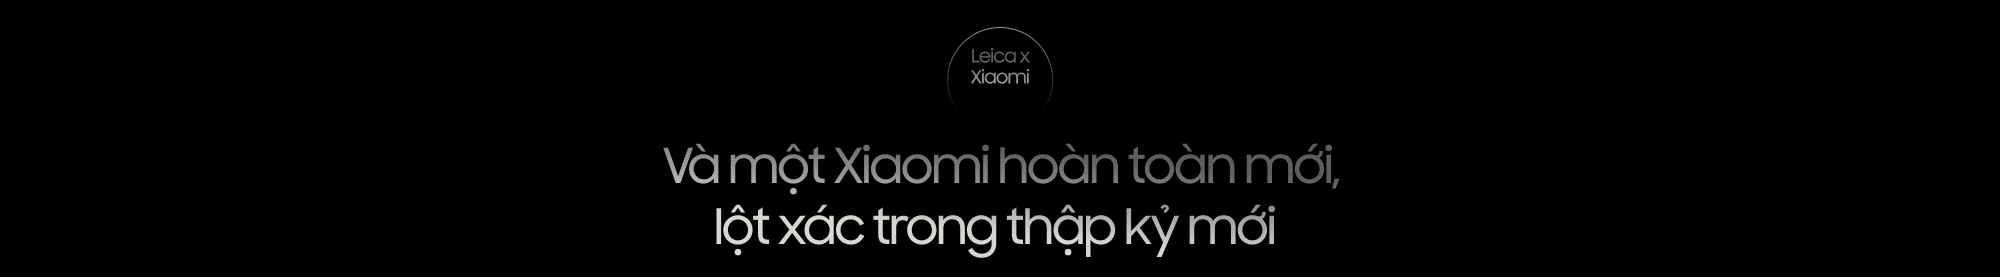 Mối lương duyên với Leica đã thay đổi smartphone Xiaomi như thế nào?- Ảnh 3.